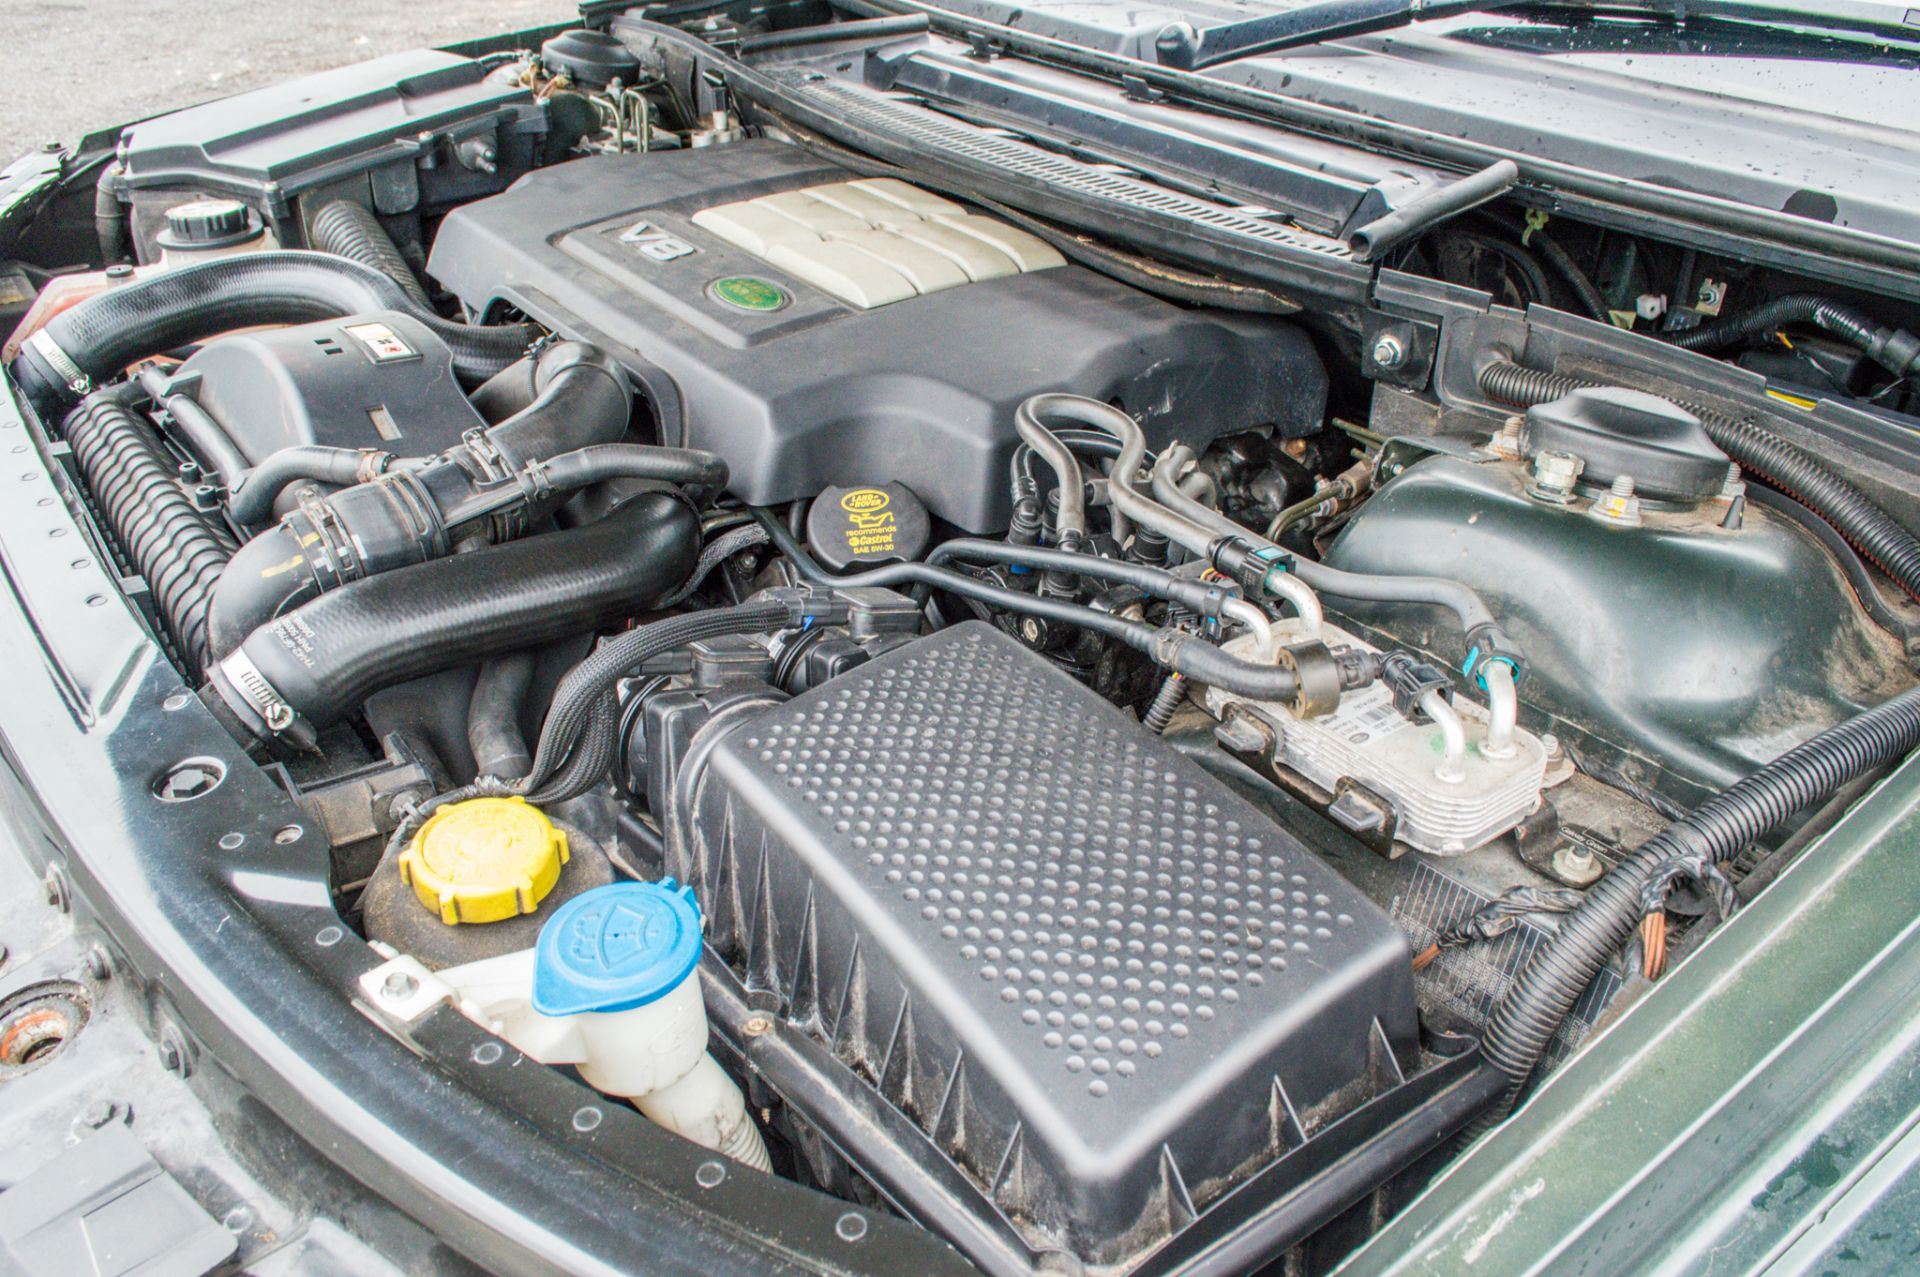 Range Rover VOGUE TDV8 3.6 diesel 5 door estate car Registration number: DG58 OBS Date of - Image 21 of 34